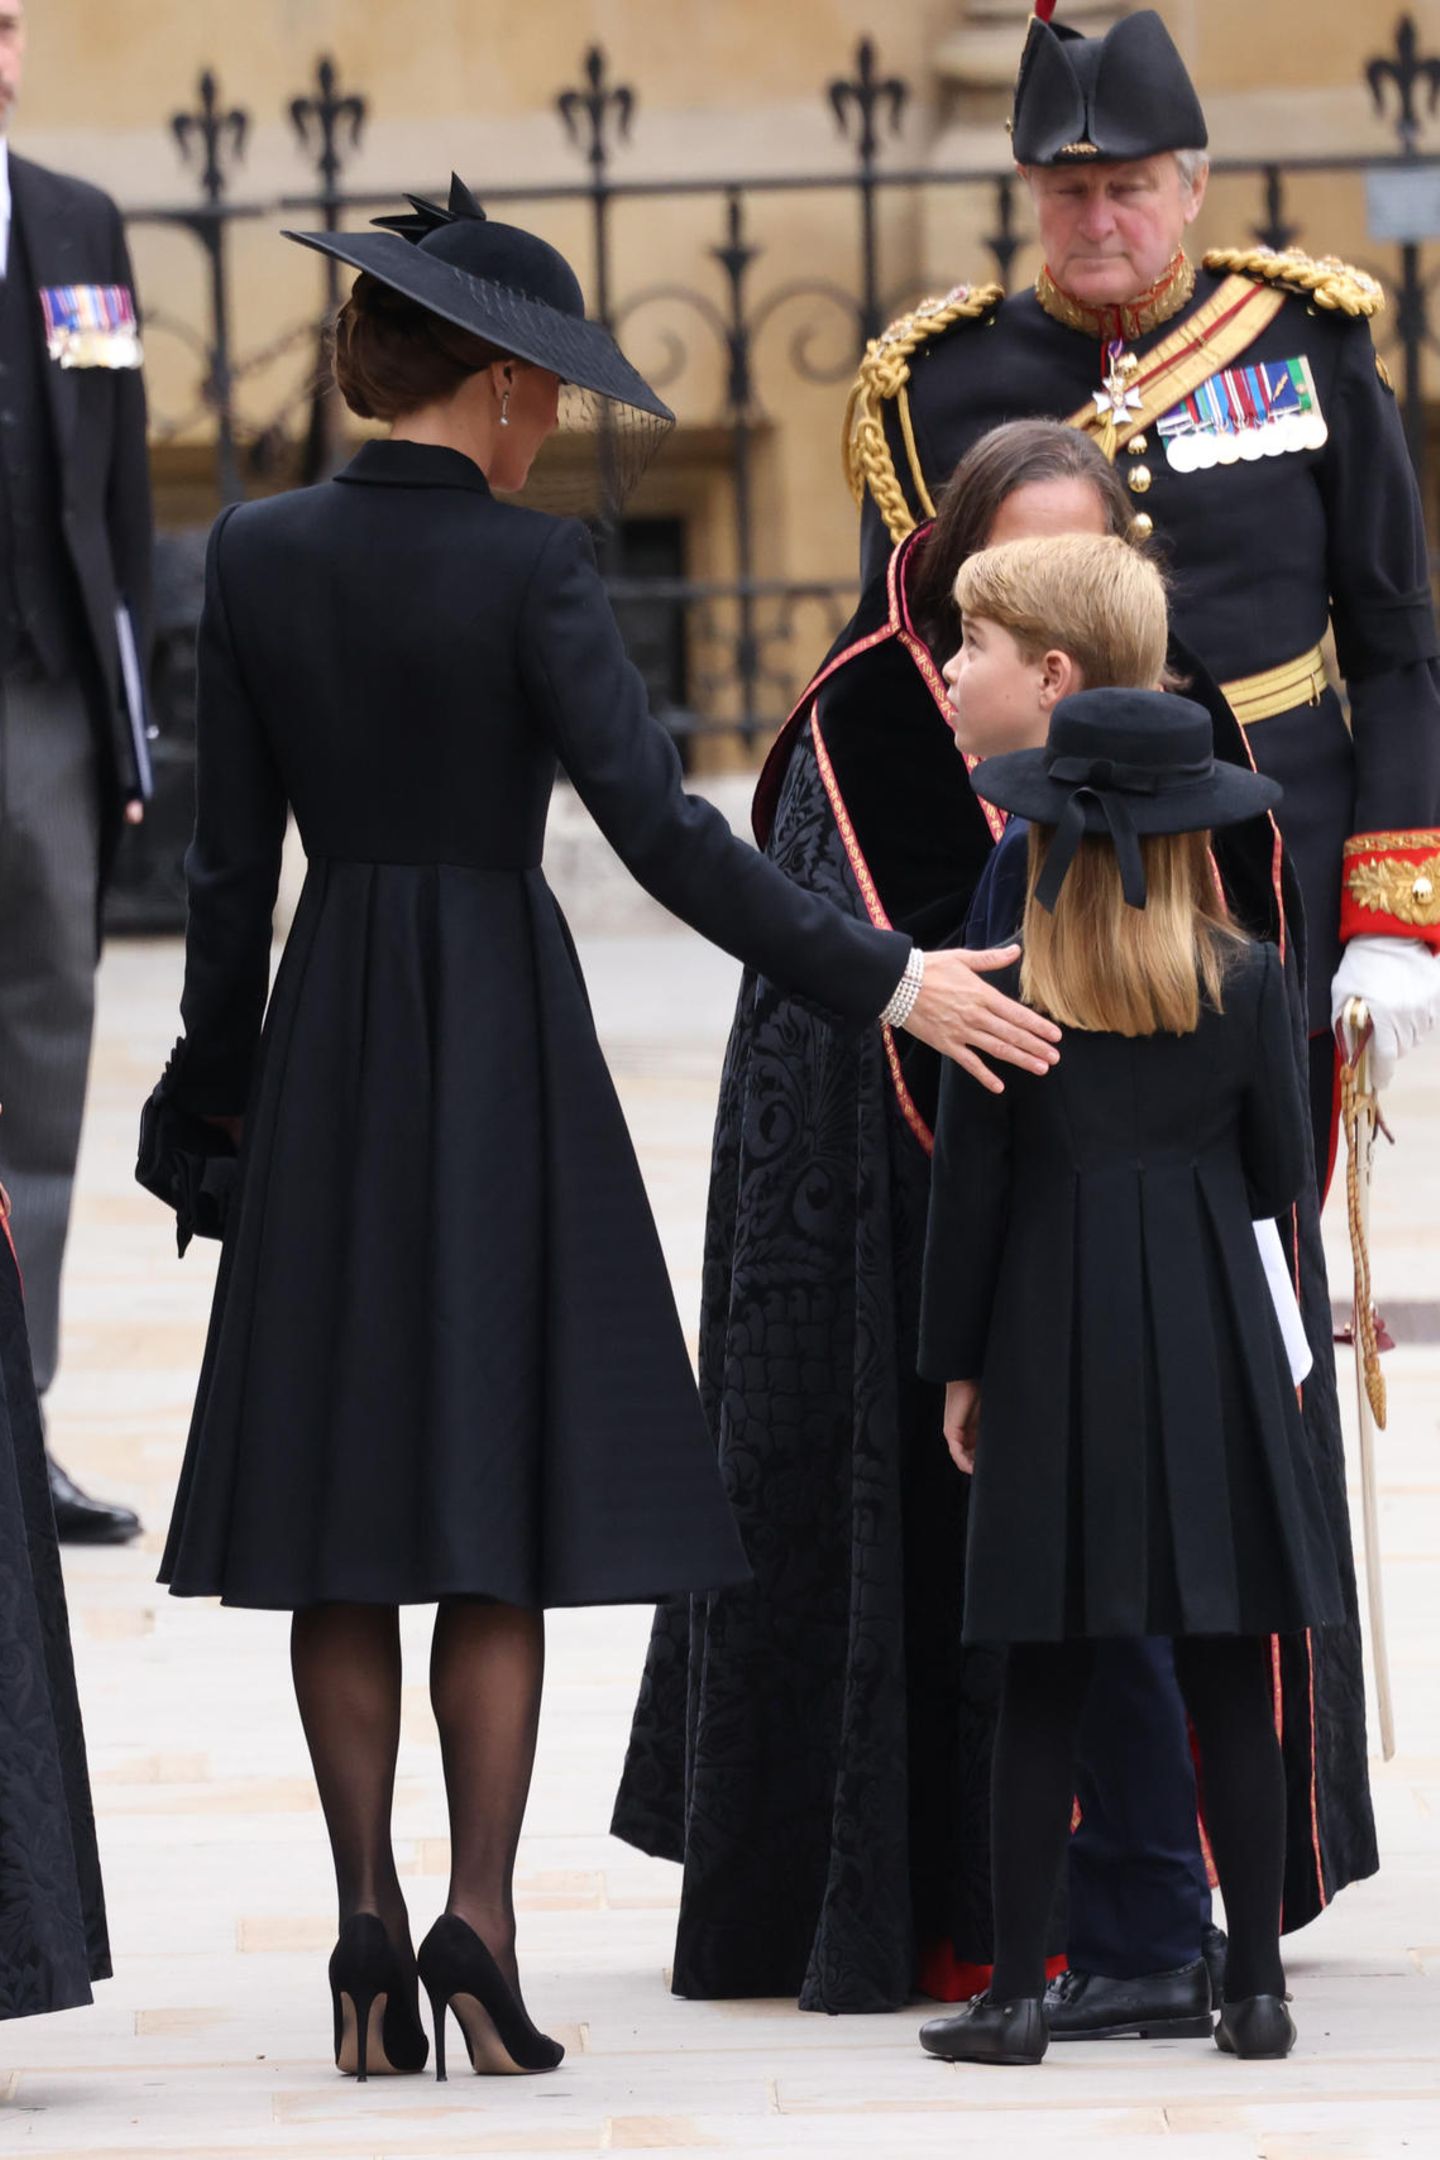 Von hinten ist noch besser erkennbar, dass Charlottes Look quasi eine Kinderversion des Outfits ihrer Mutter, Herzogin Catherine ist. Beide Mäntel haben in Falten gelegte Röcke und sind an der Taille akzentuiert. 